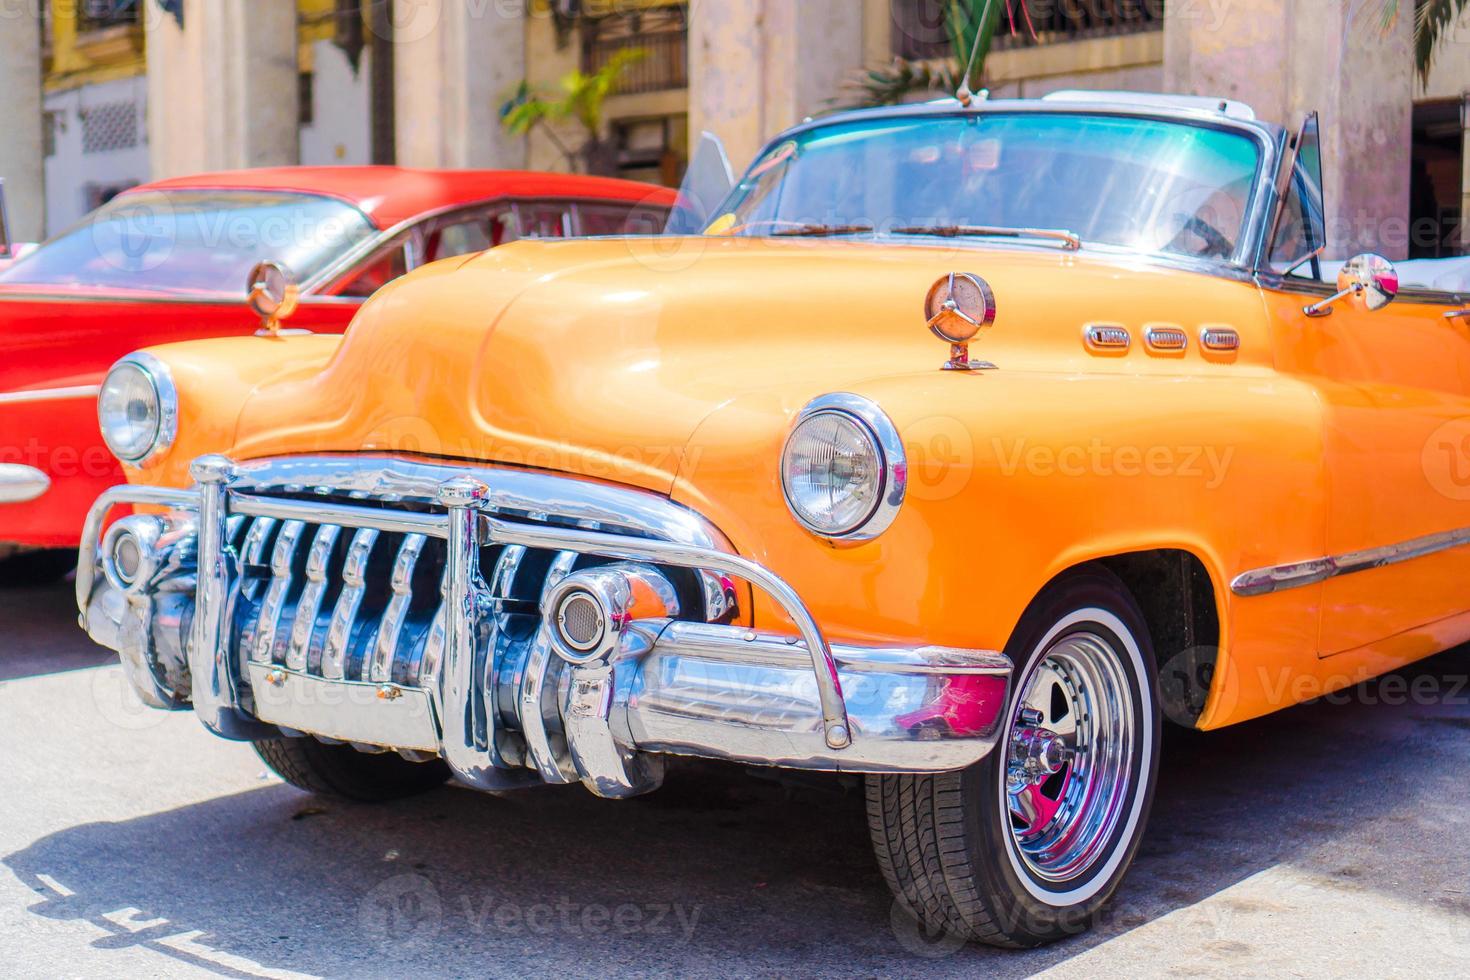 farbenfroher amerikanischer Oldtimer auf der Straße in Havanna, Kuba foto